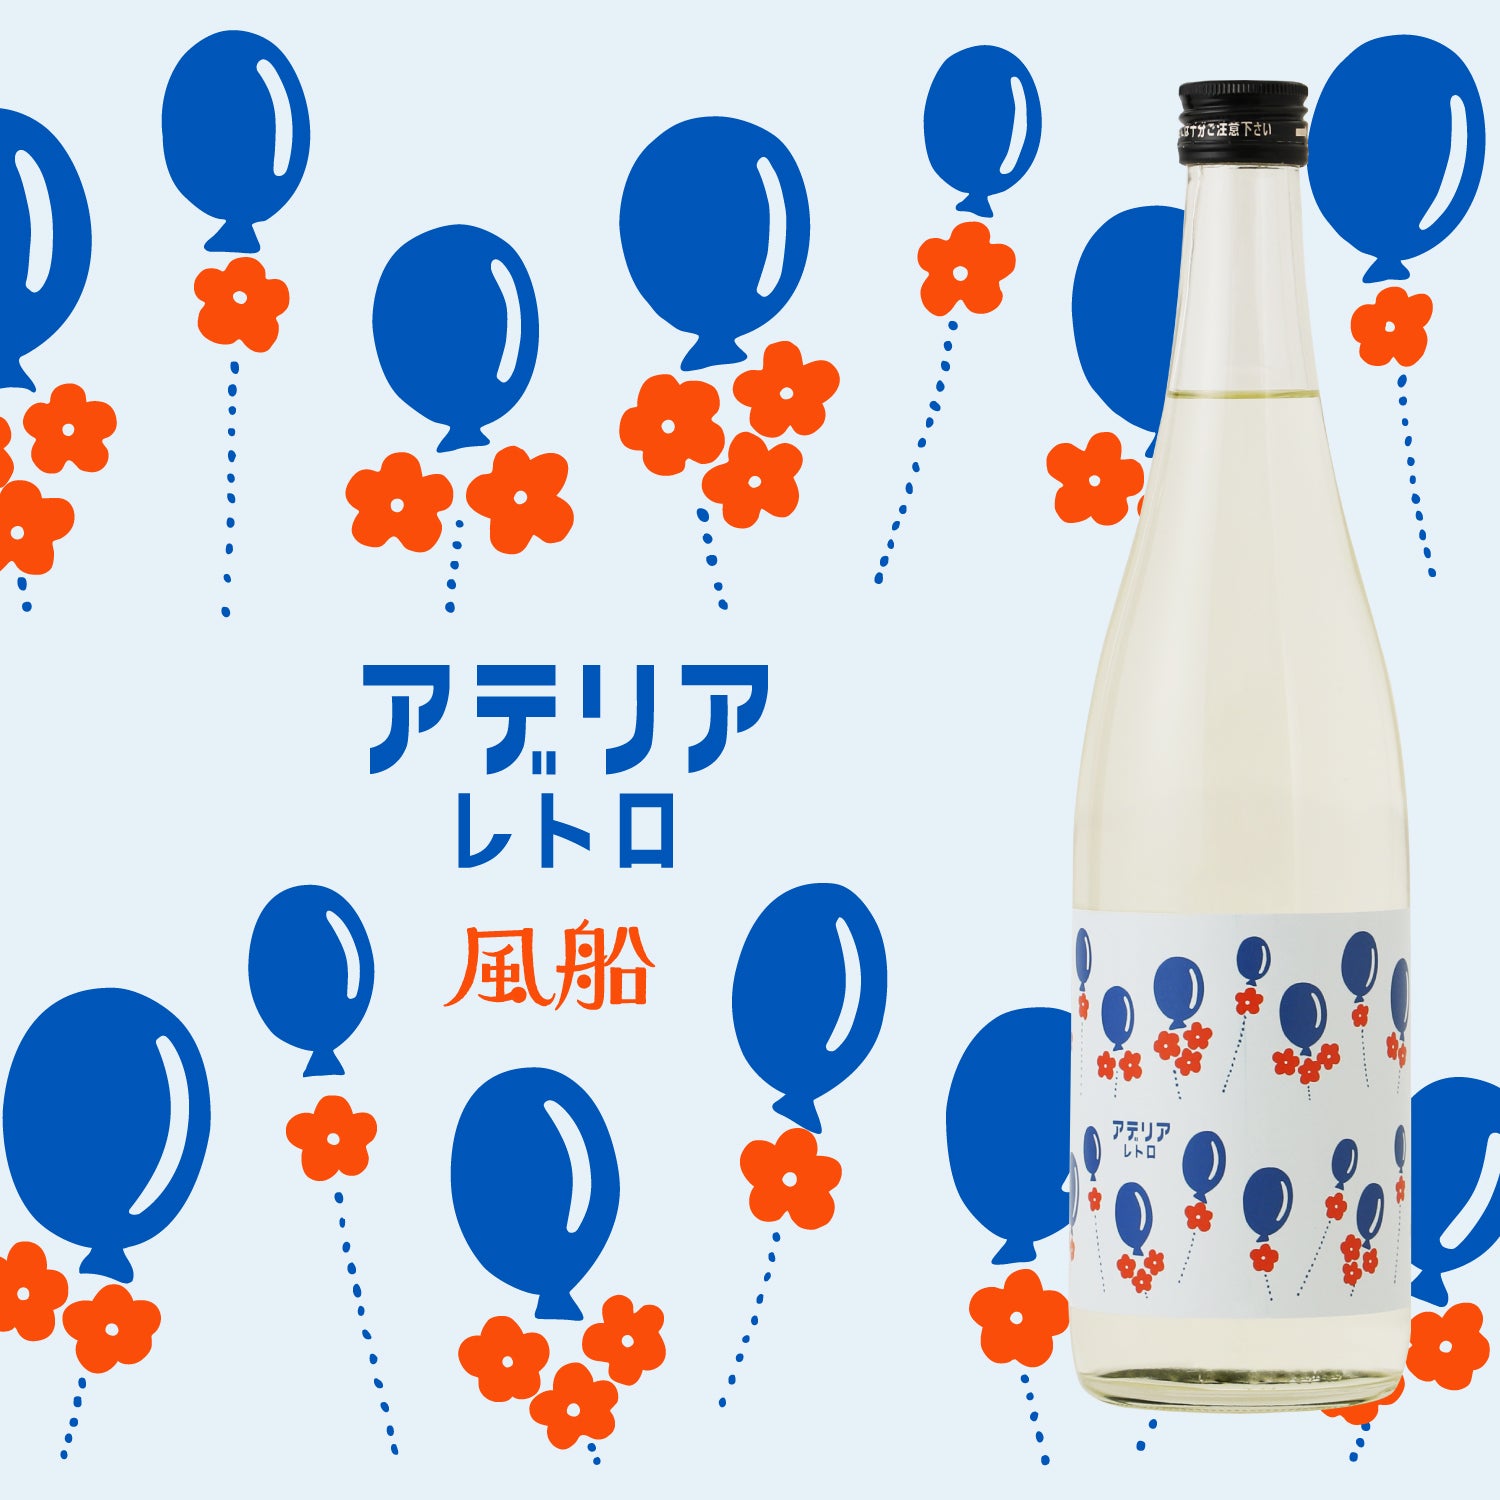 アデリアレトロ コラボボトル -風船- | 茨城県の日本酒 | 酒・日本酒の